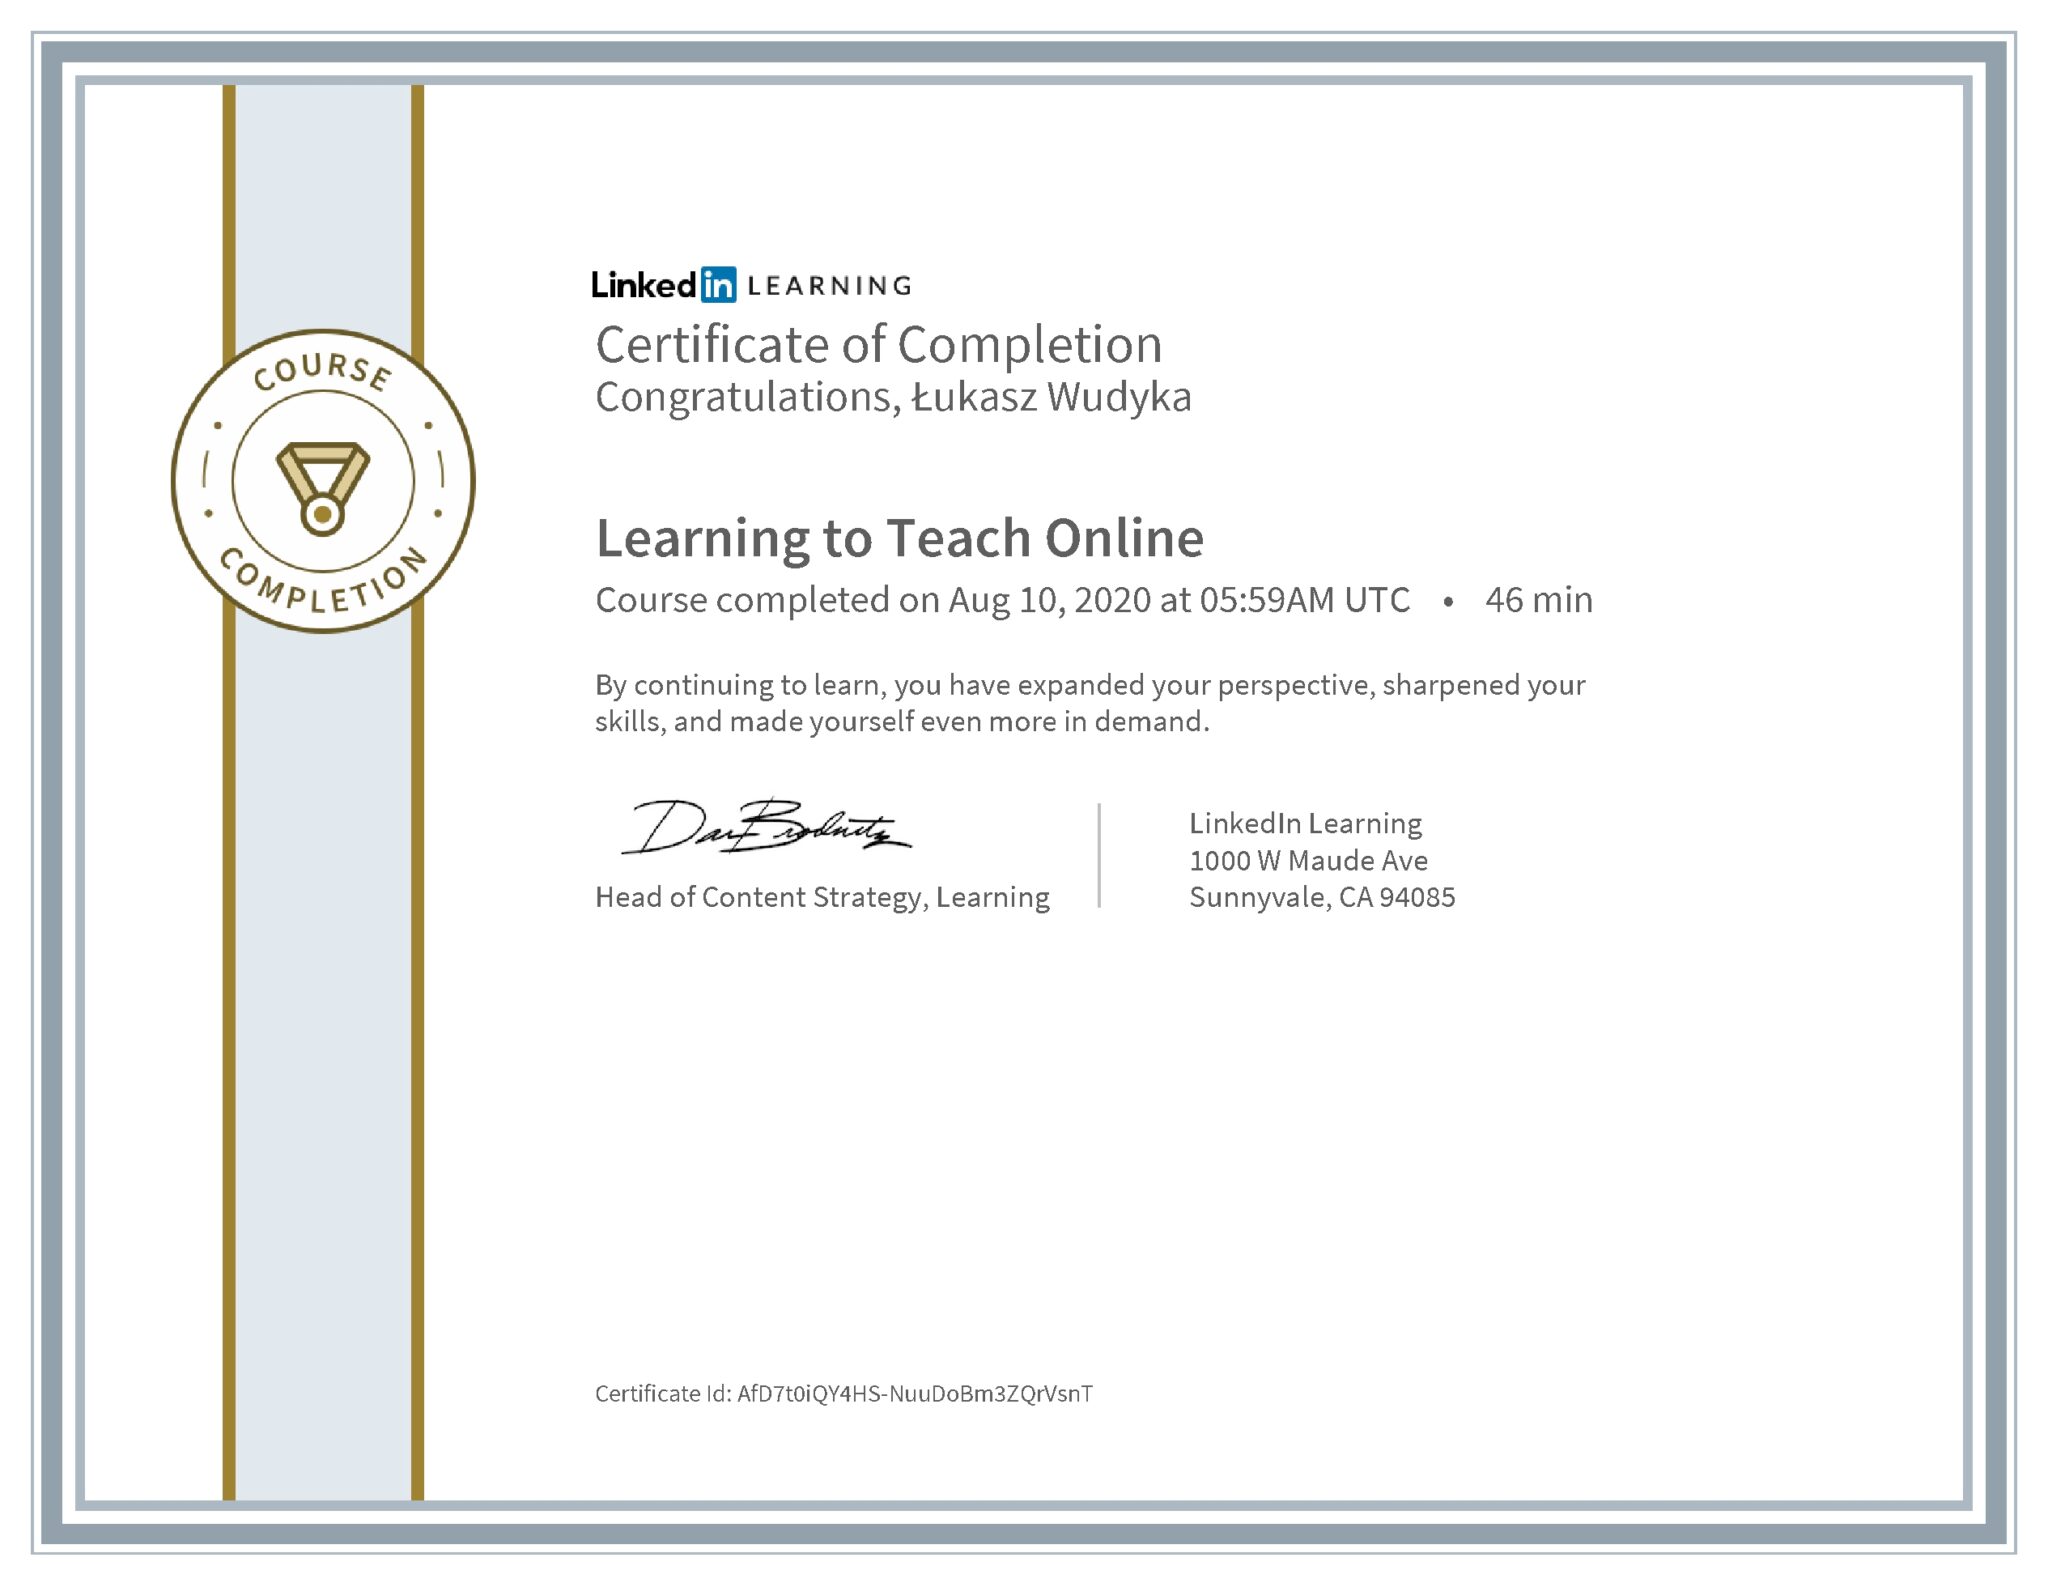 Łukasz Wudyka certyfikat LinkedIn Learning to Teach Online